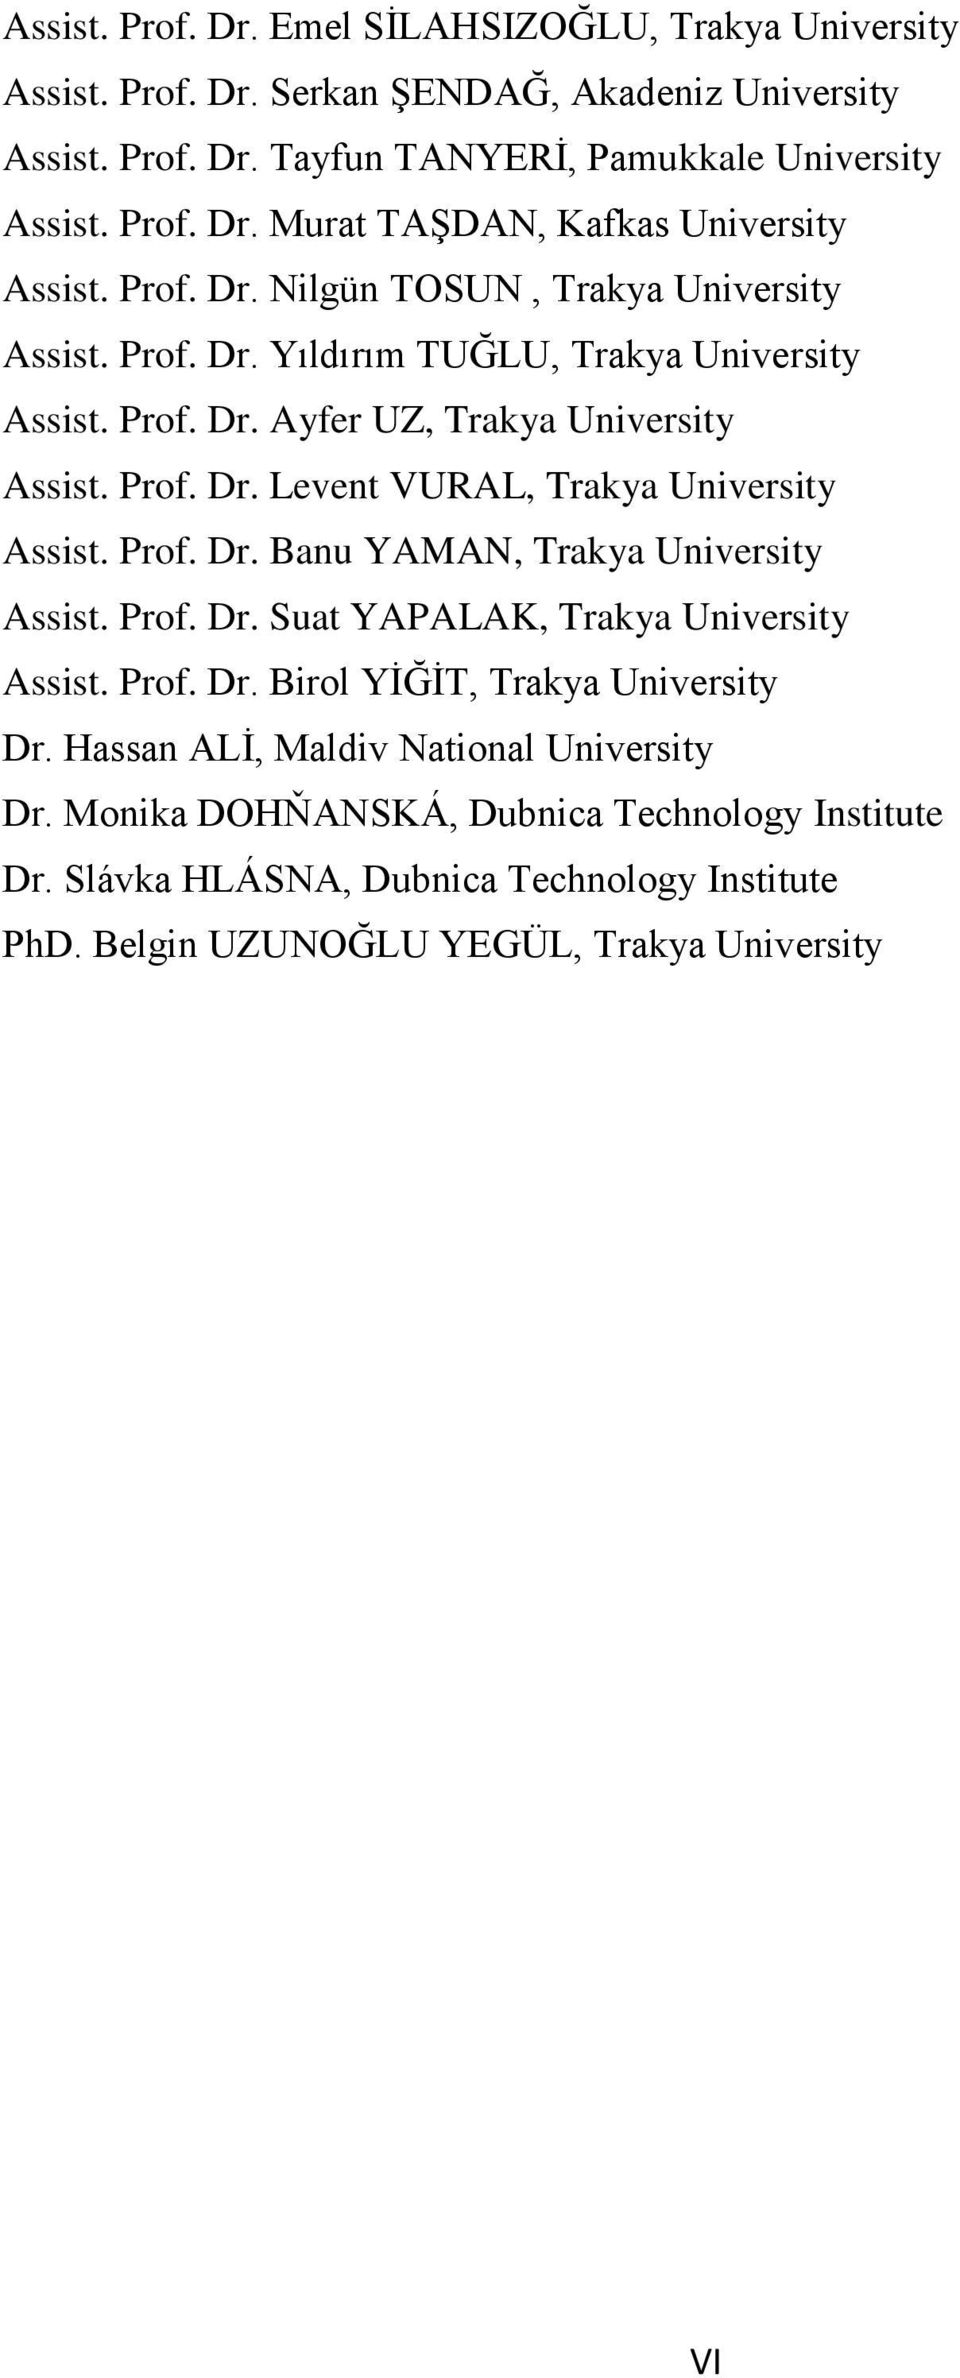 Prof. Dr. Banu YAMAN, Trakya University Assist. Prof. Dr. Suat YAPALAK, Trakya University Assist. Prof. Dr. Birol YİĞİT, Trakya University Dr. Hassan ALİ, Maldiv National University Dr.